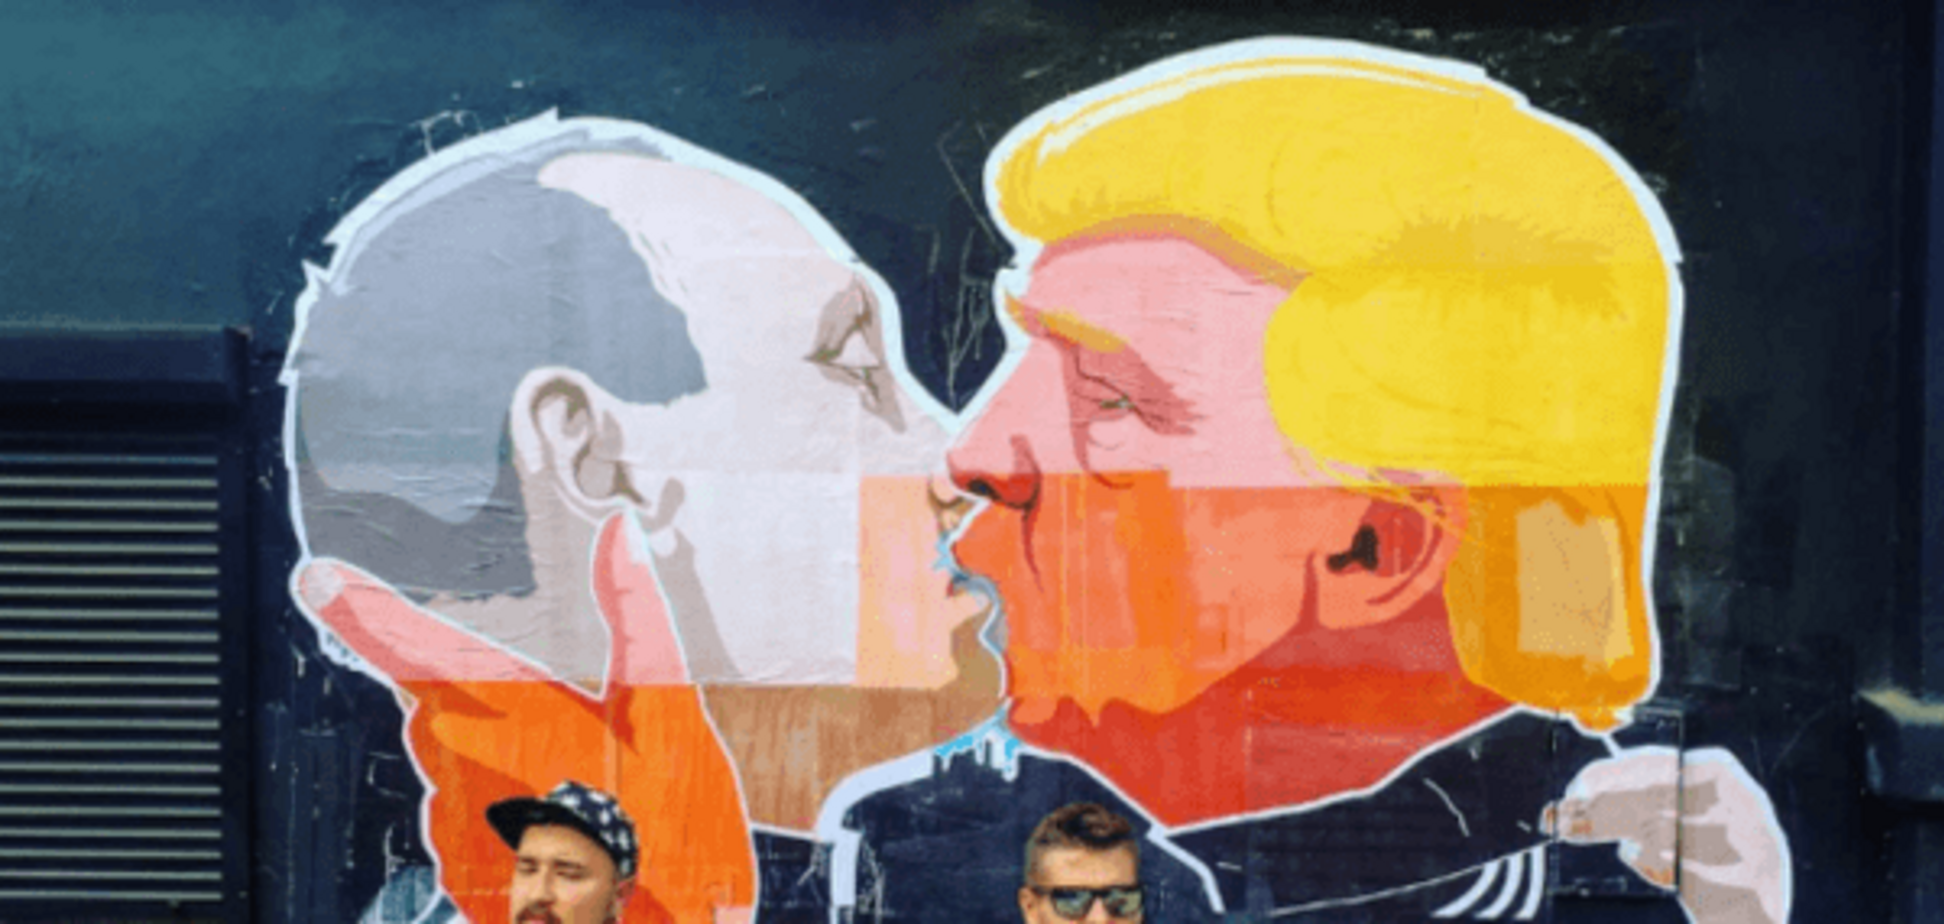 Горячий поцелуй Путина и Трампа: в Литве появился провокационный мурал. Фотофакт